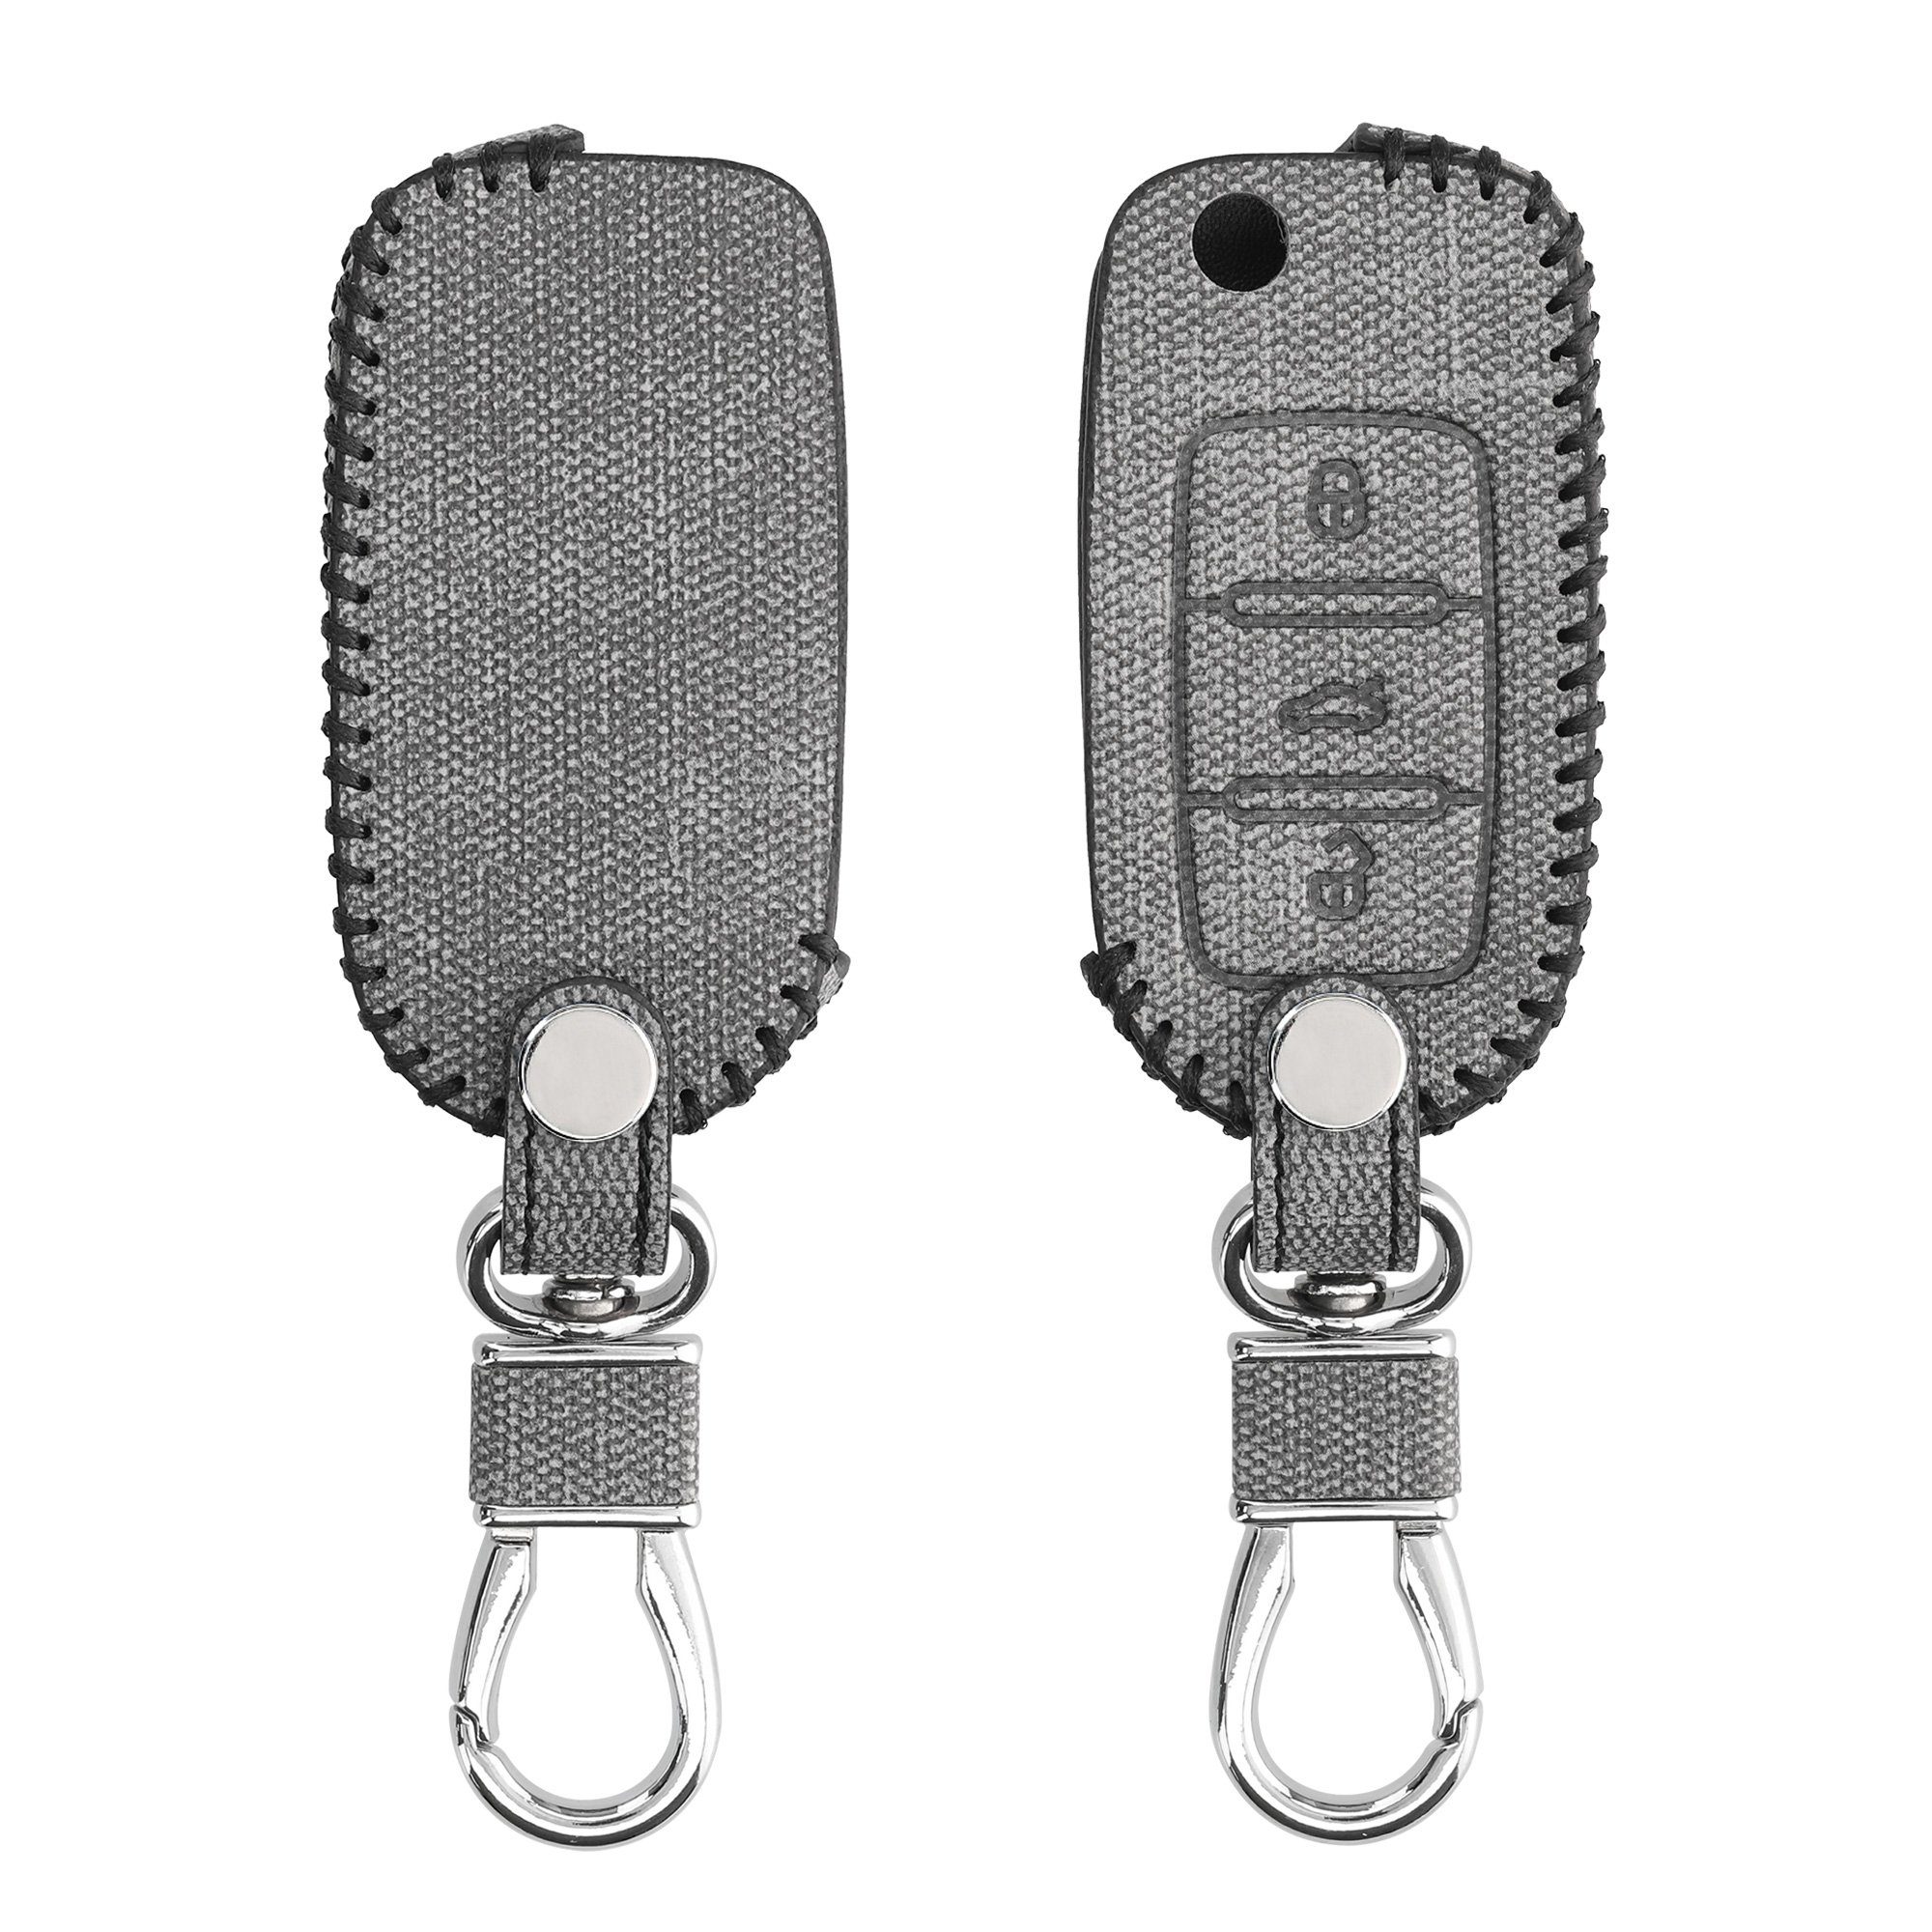 Cover Schlüssel Hülle Skoda Autoschlüssel in kwmobile Case Kunstleder Grau Schlüsselhülle VW Seat, Schlüsseltasche für